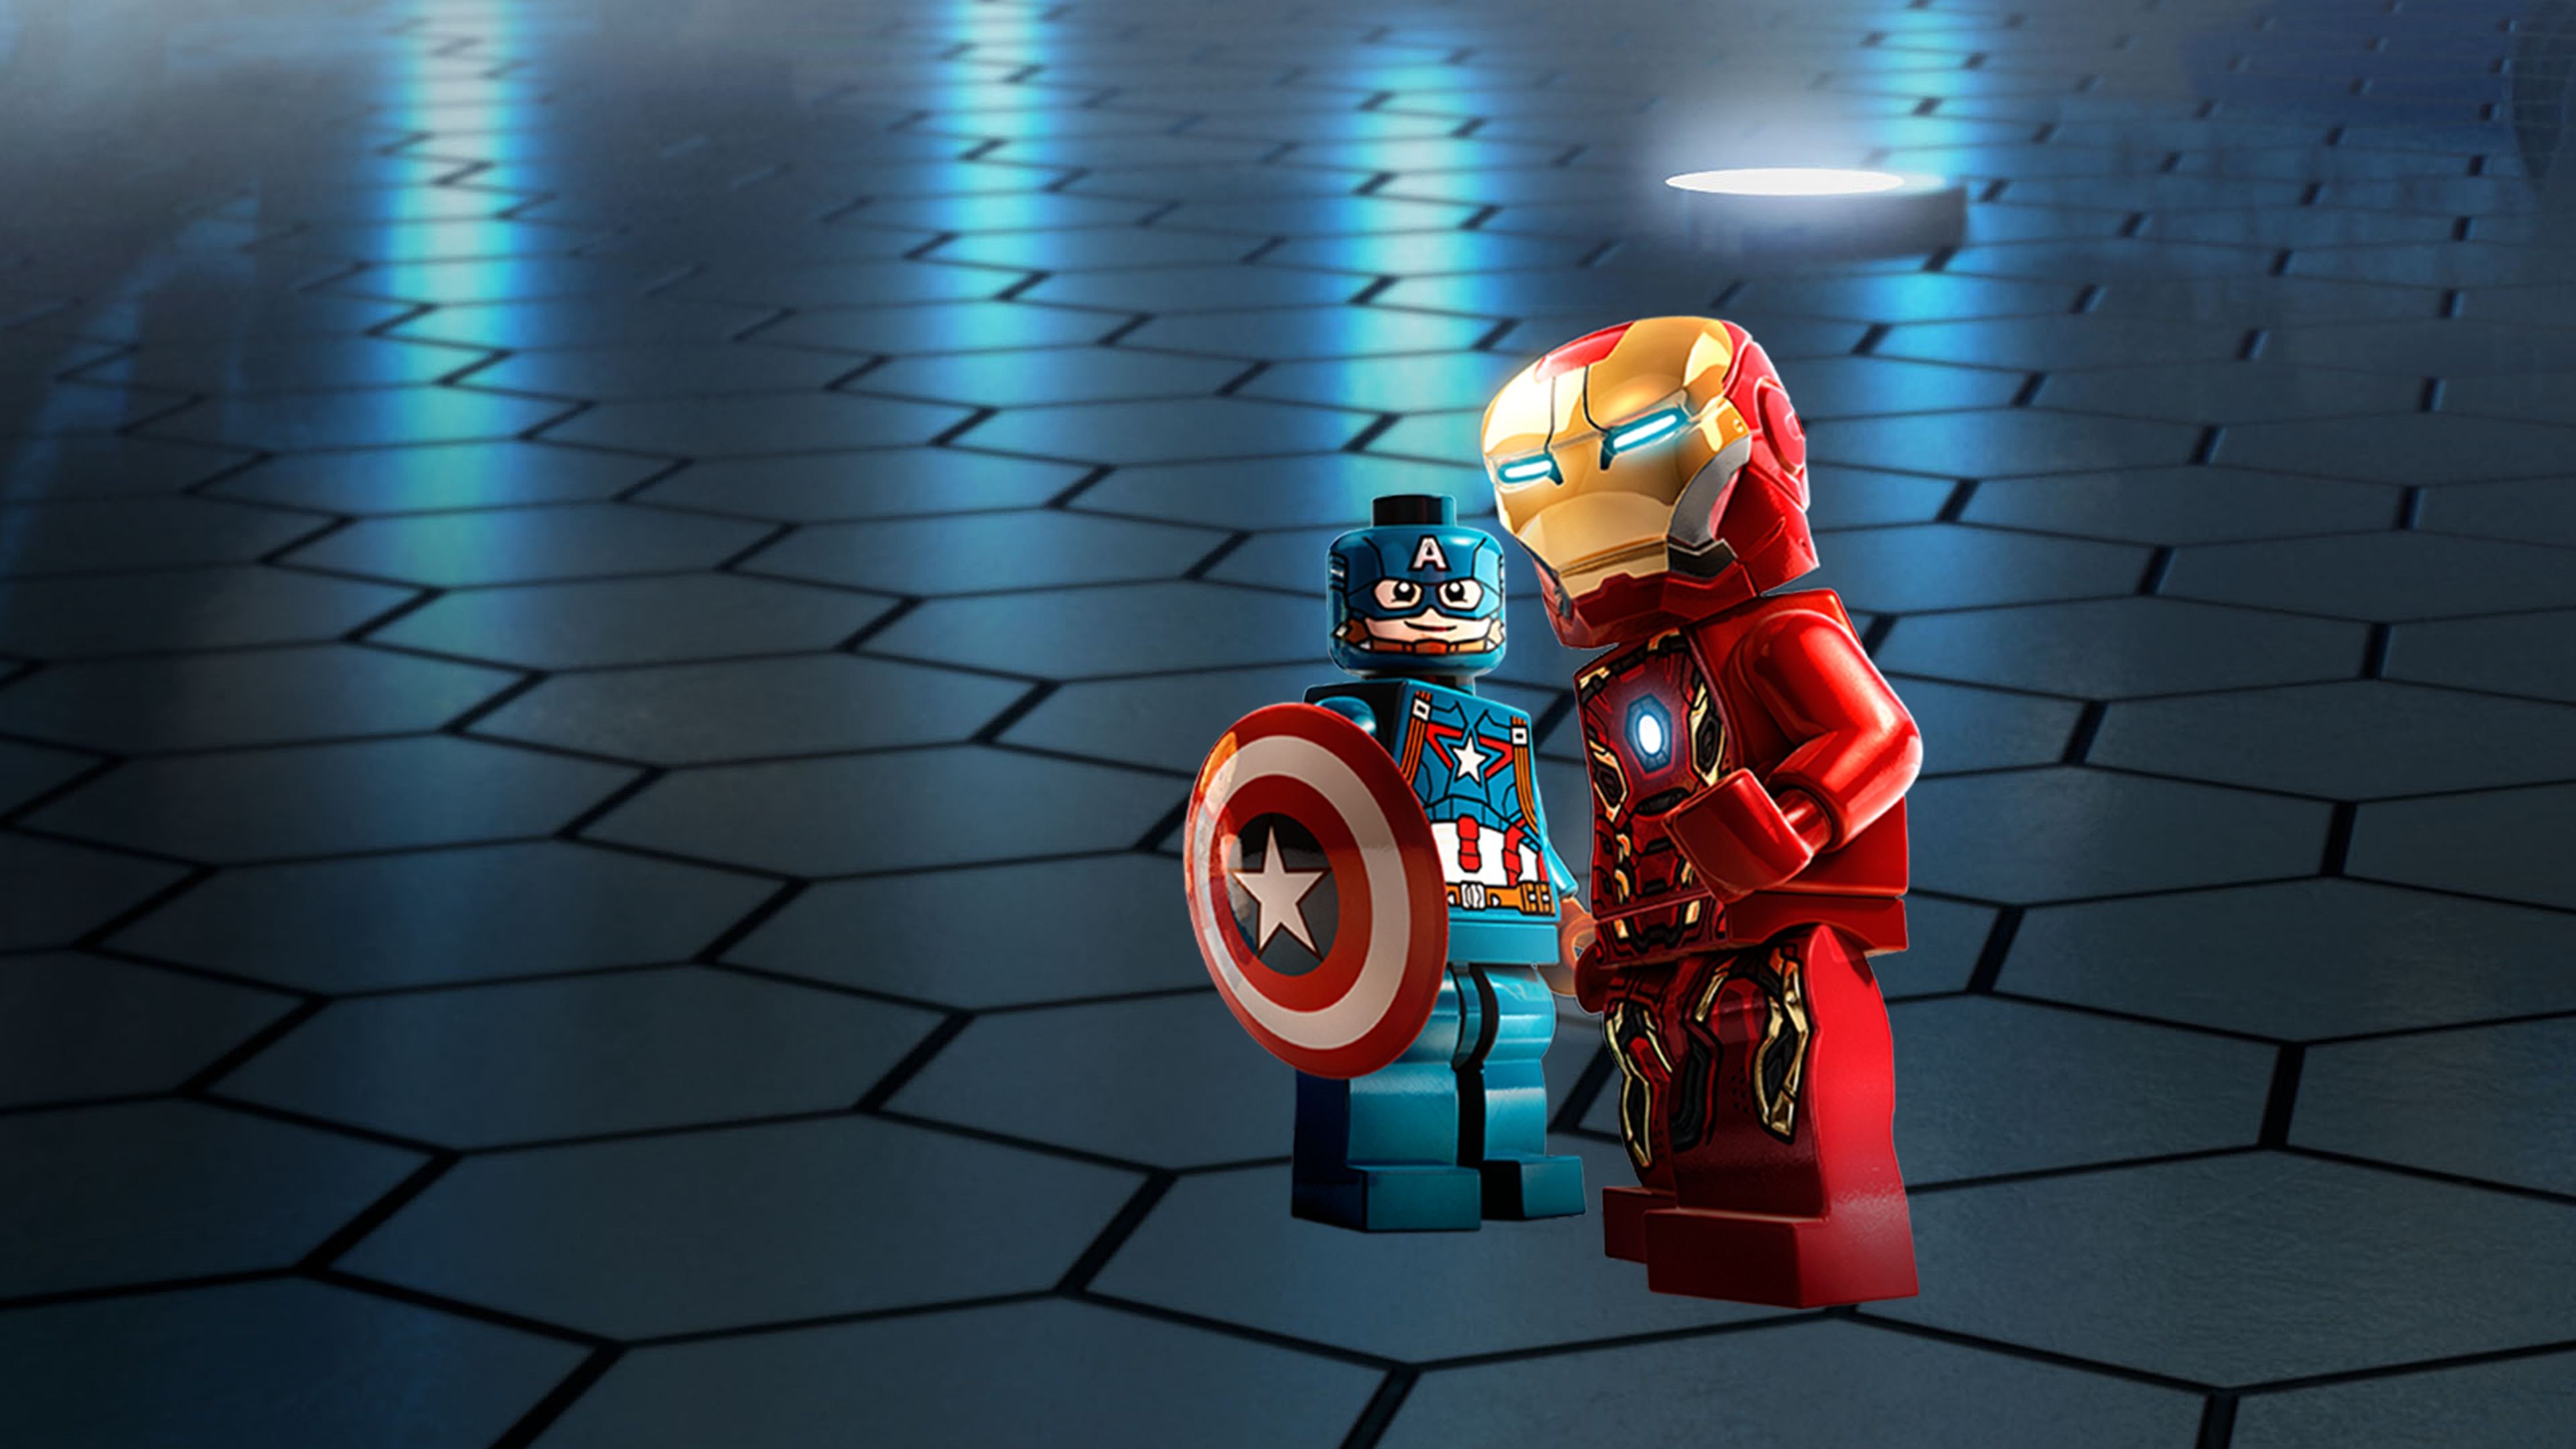 LEGO® MARVEL's Avengers cover image